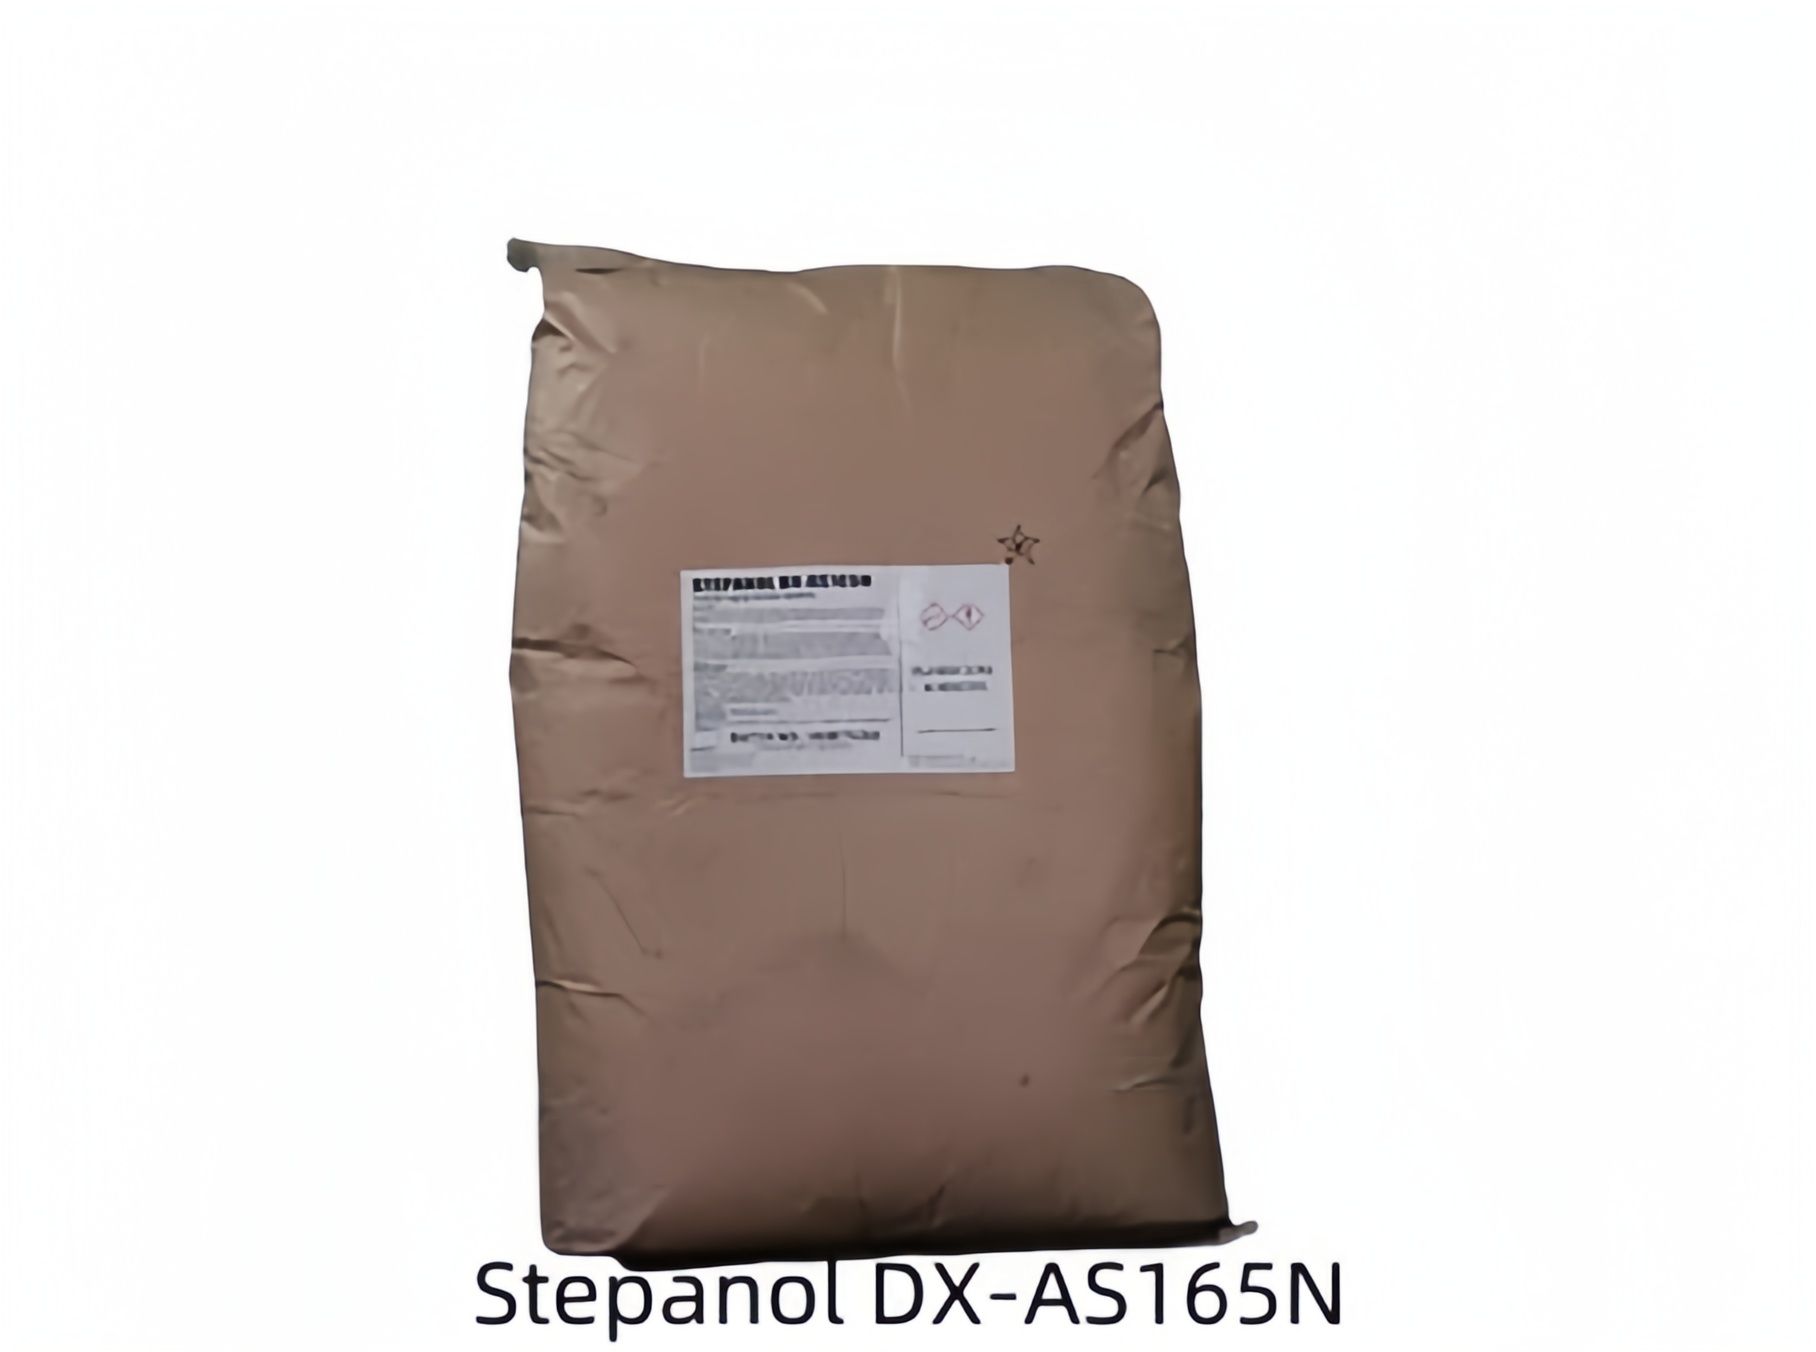 巴斯夫乳化剂Stepanol DX-AS165N